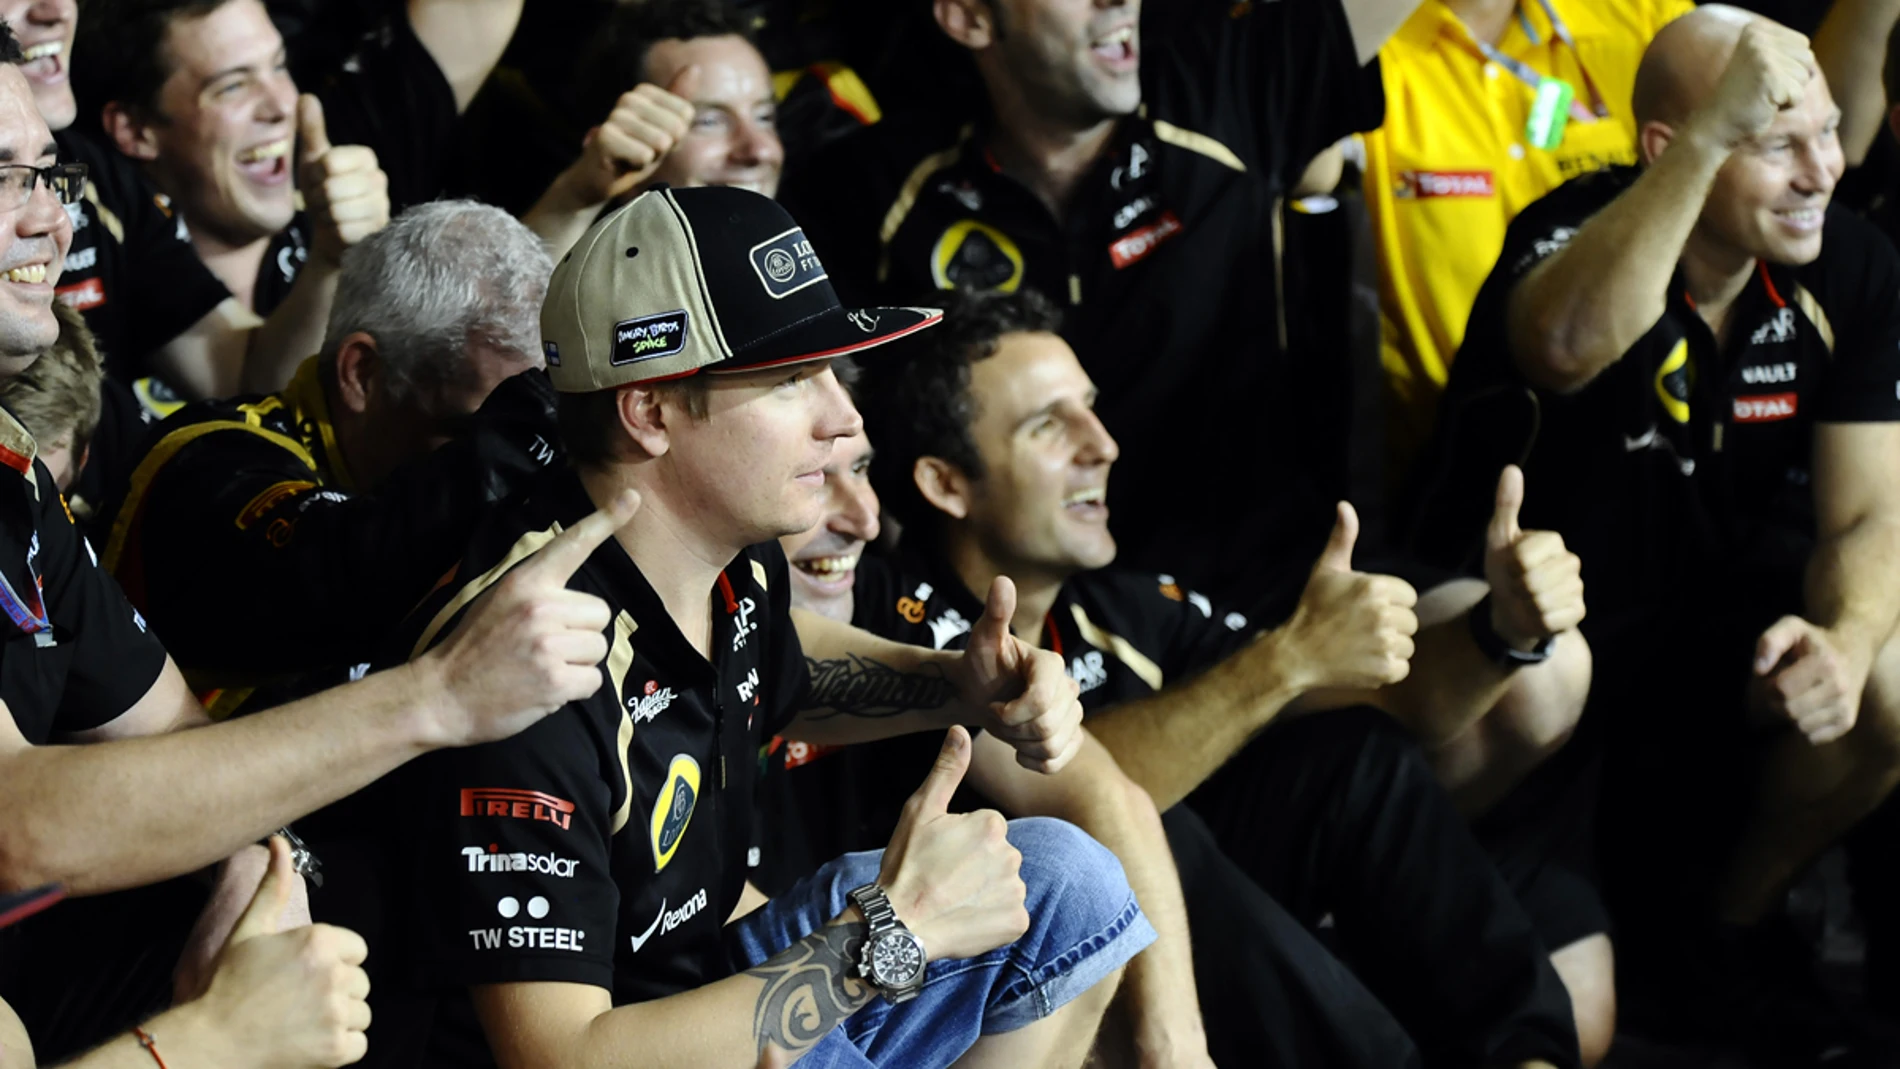 Kimi celebra la victoria con su equipo